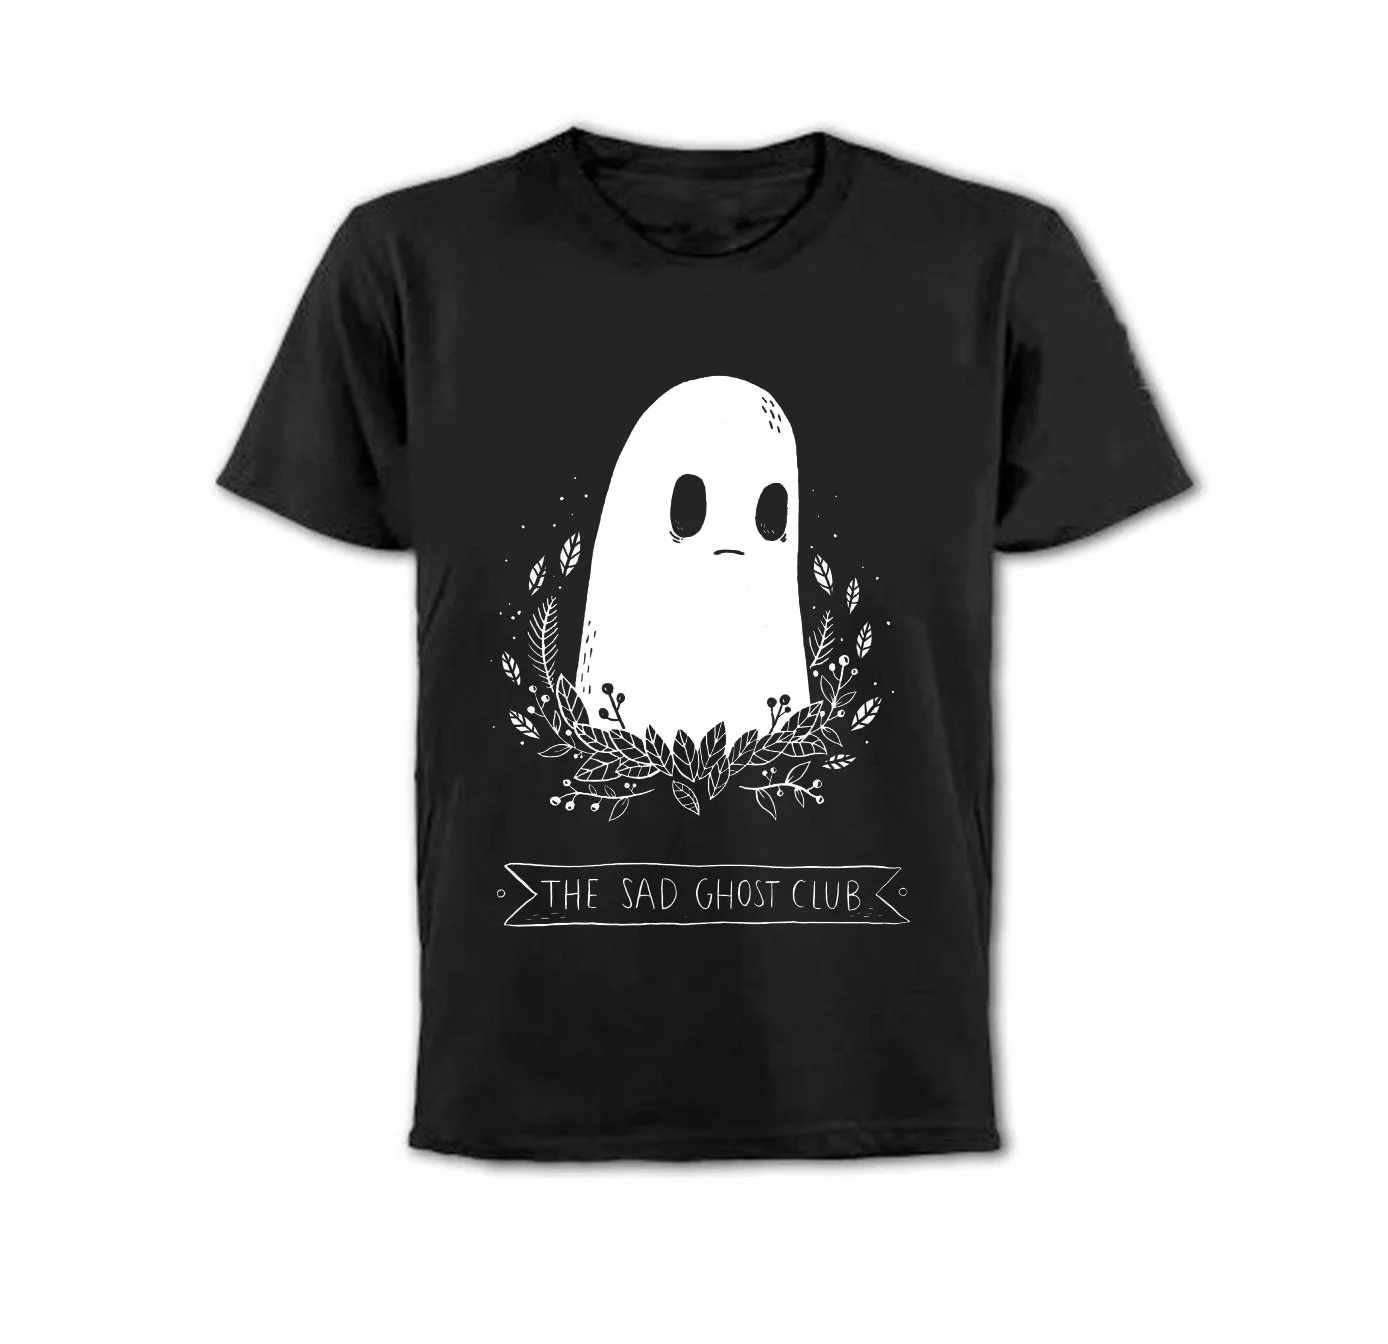 Hahayule The Sad Ghost Club унисекс для мужчин и женщин Tumblr модная Милая футболка Летняя Повседневная Свободная Черная футболка Топы